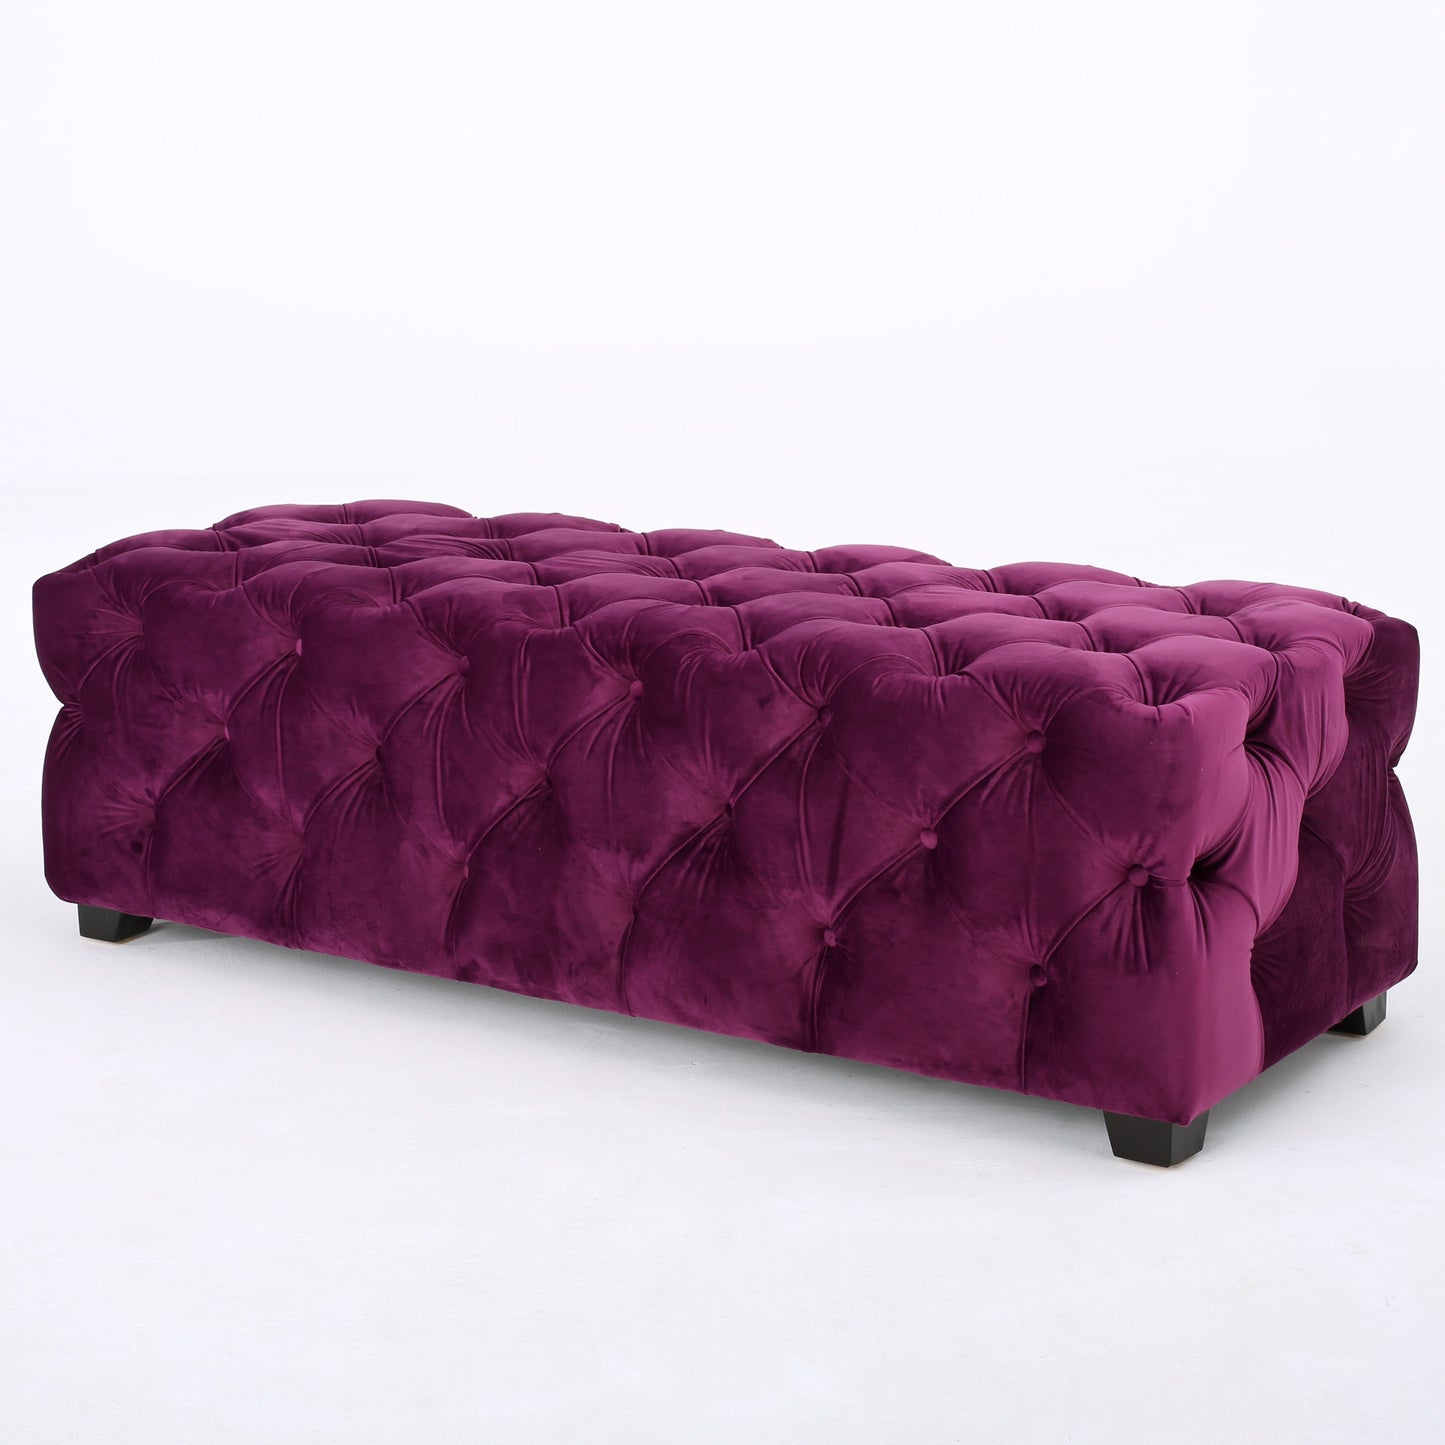 Provence Modern Glam Tufted Velvet Ottoman Bench